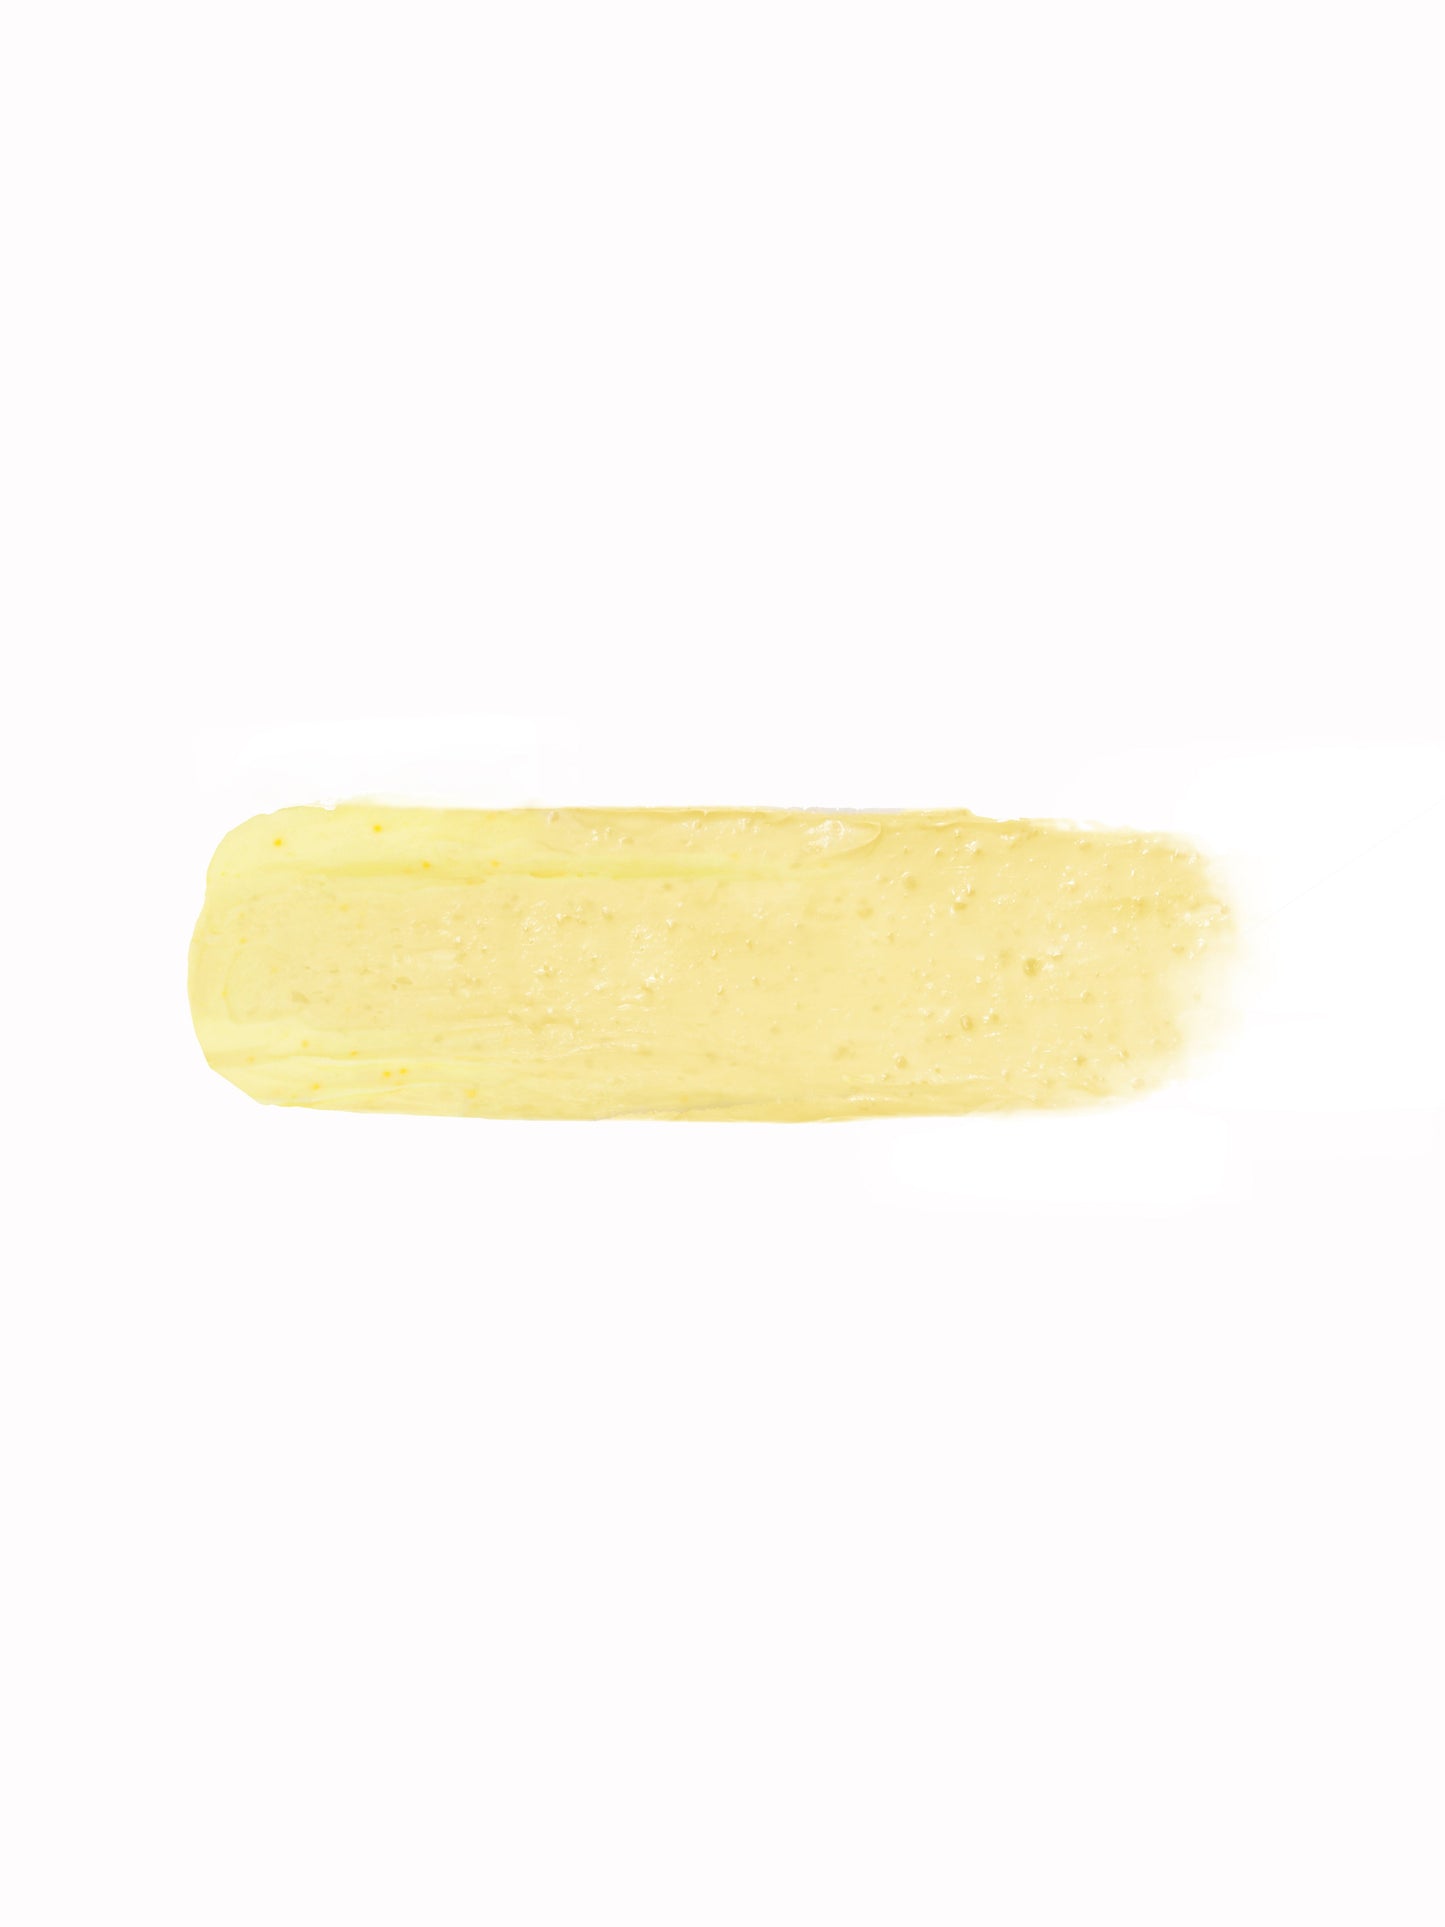 Recode Banana Scrub in Tube - 100 gms